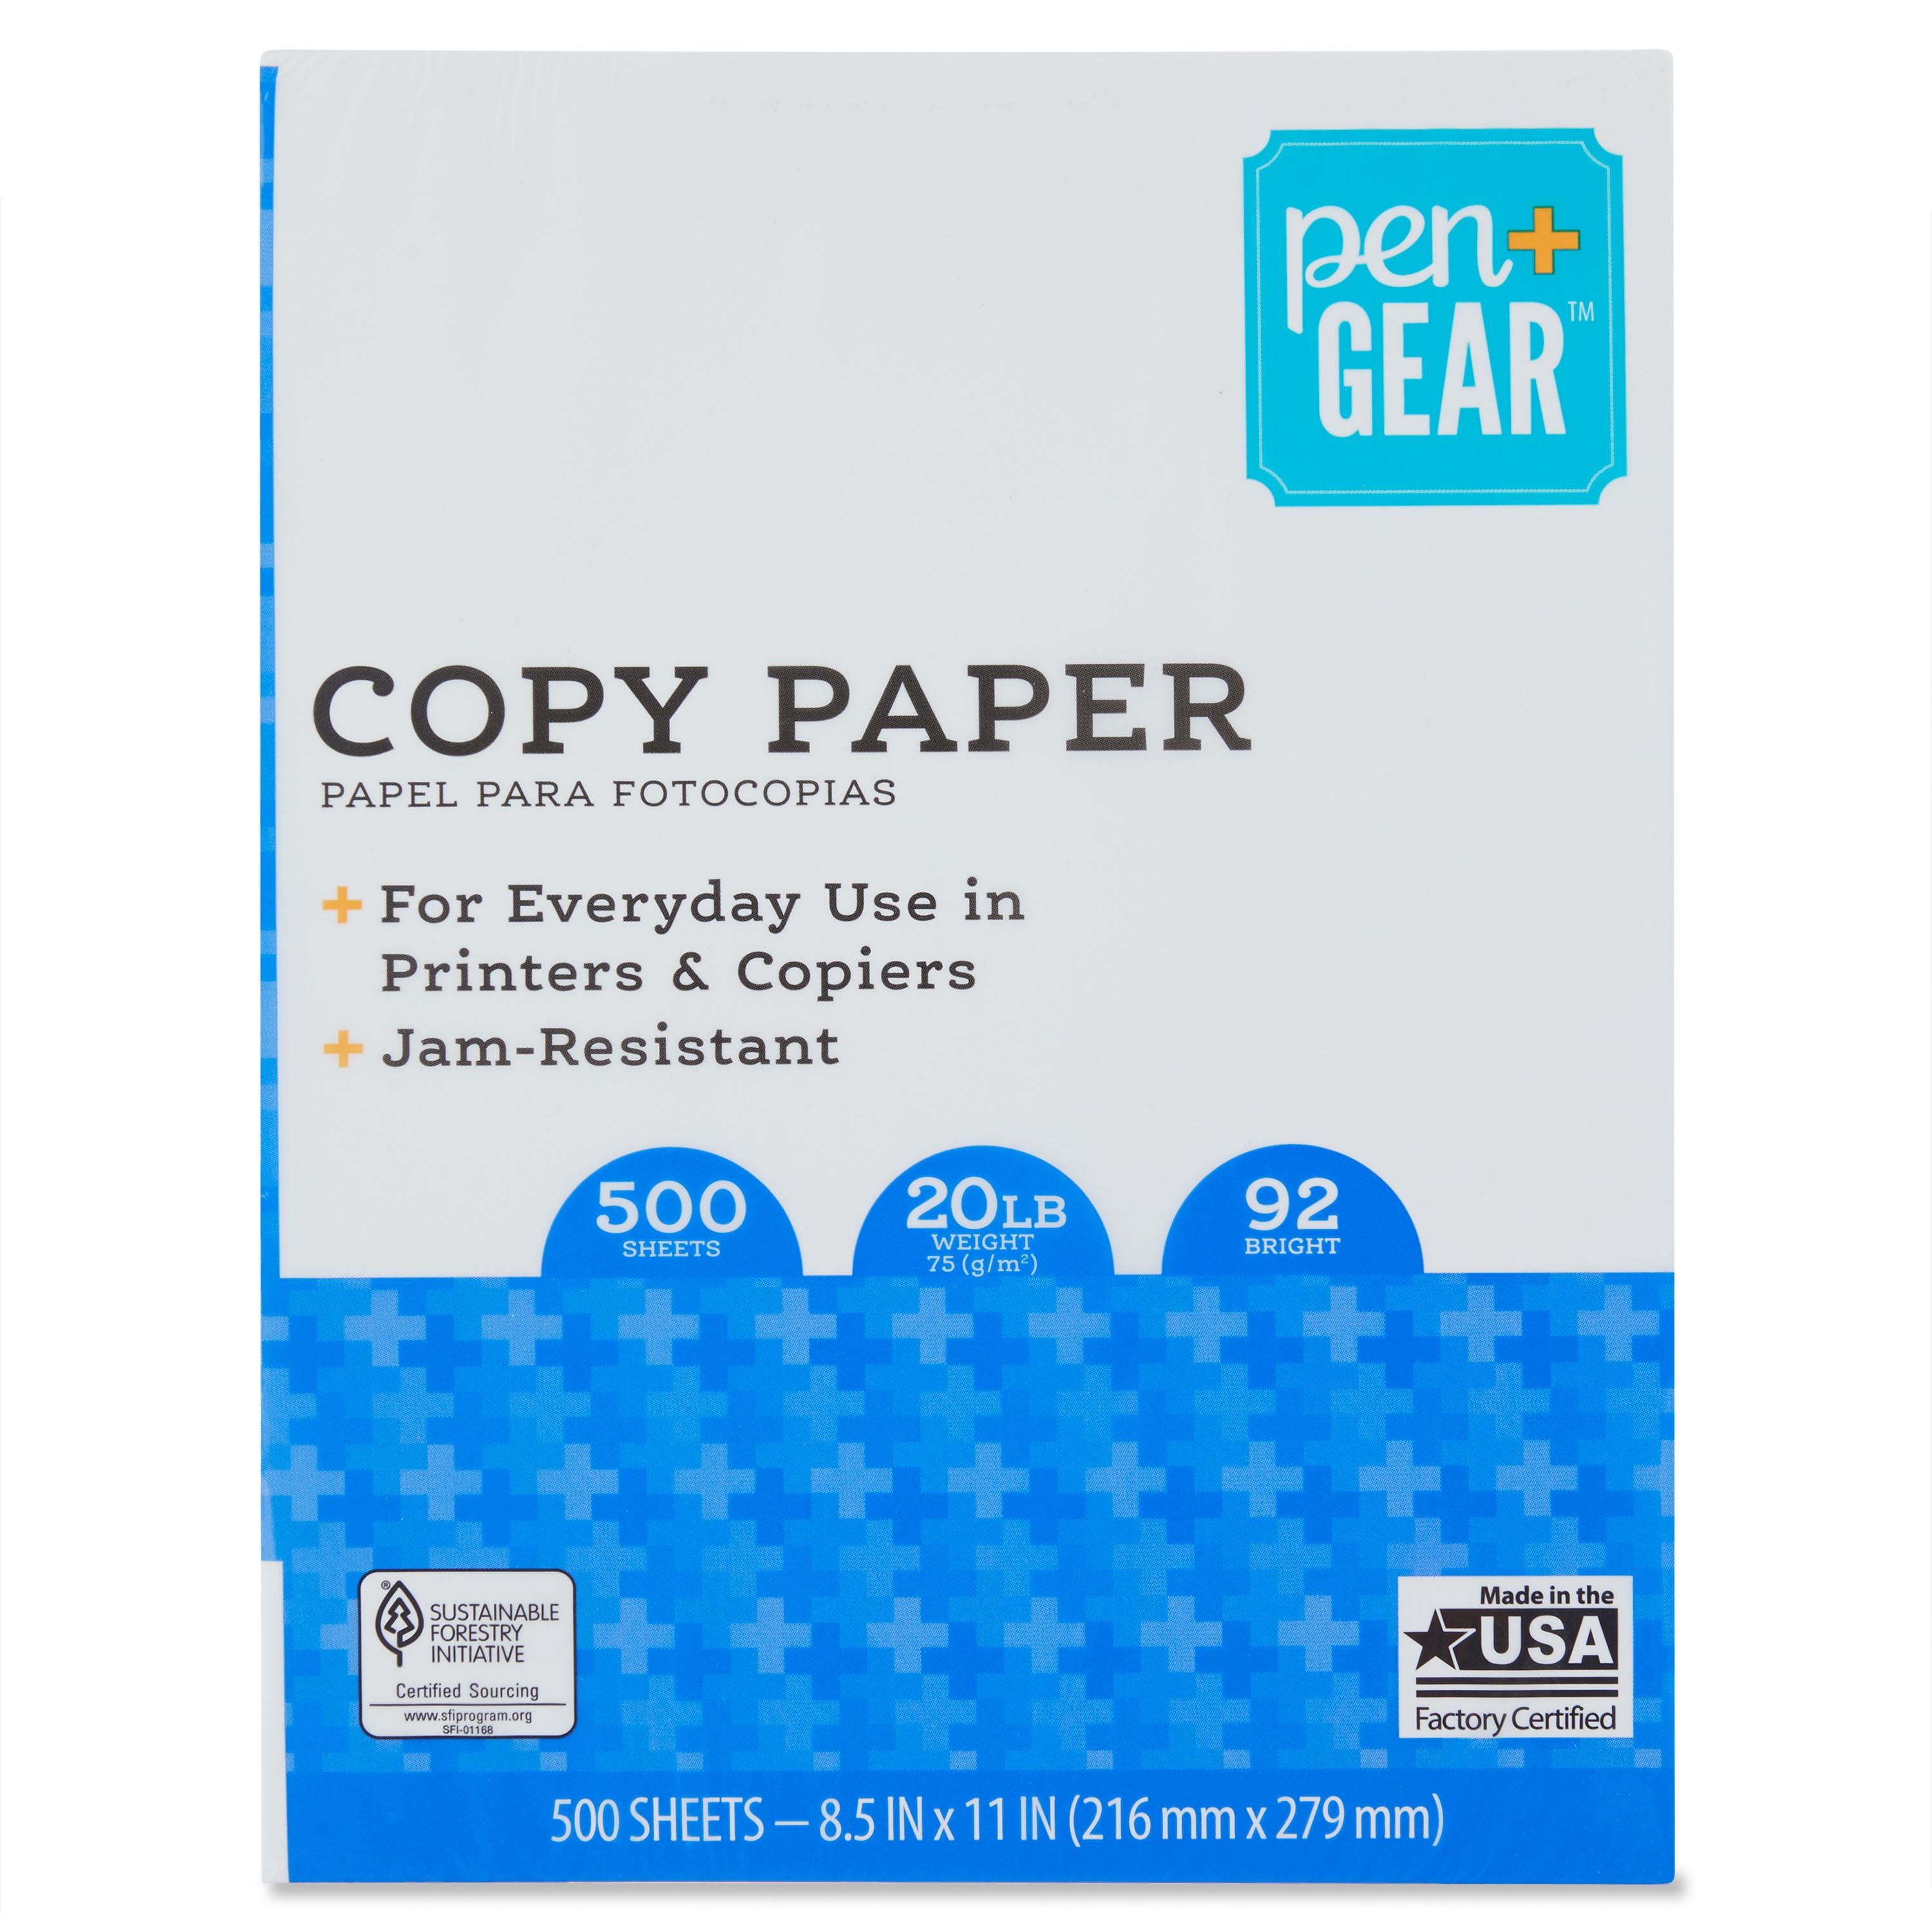 Pen+Gear Copy Paper, 8.5" x 11", 92 Bright, 20 lb., 1 Ream (500 Sheets)